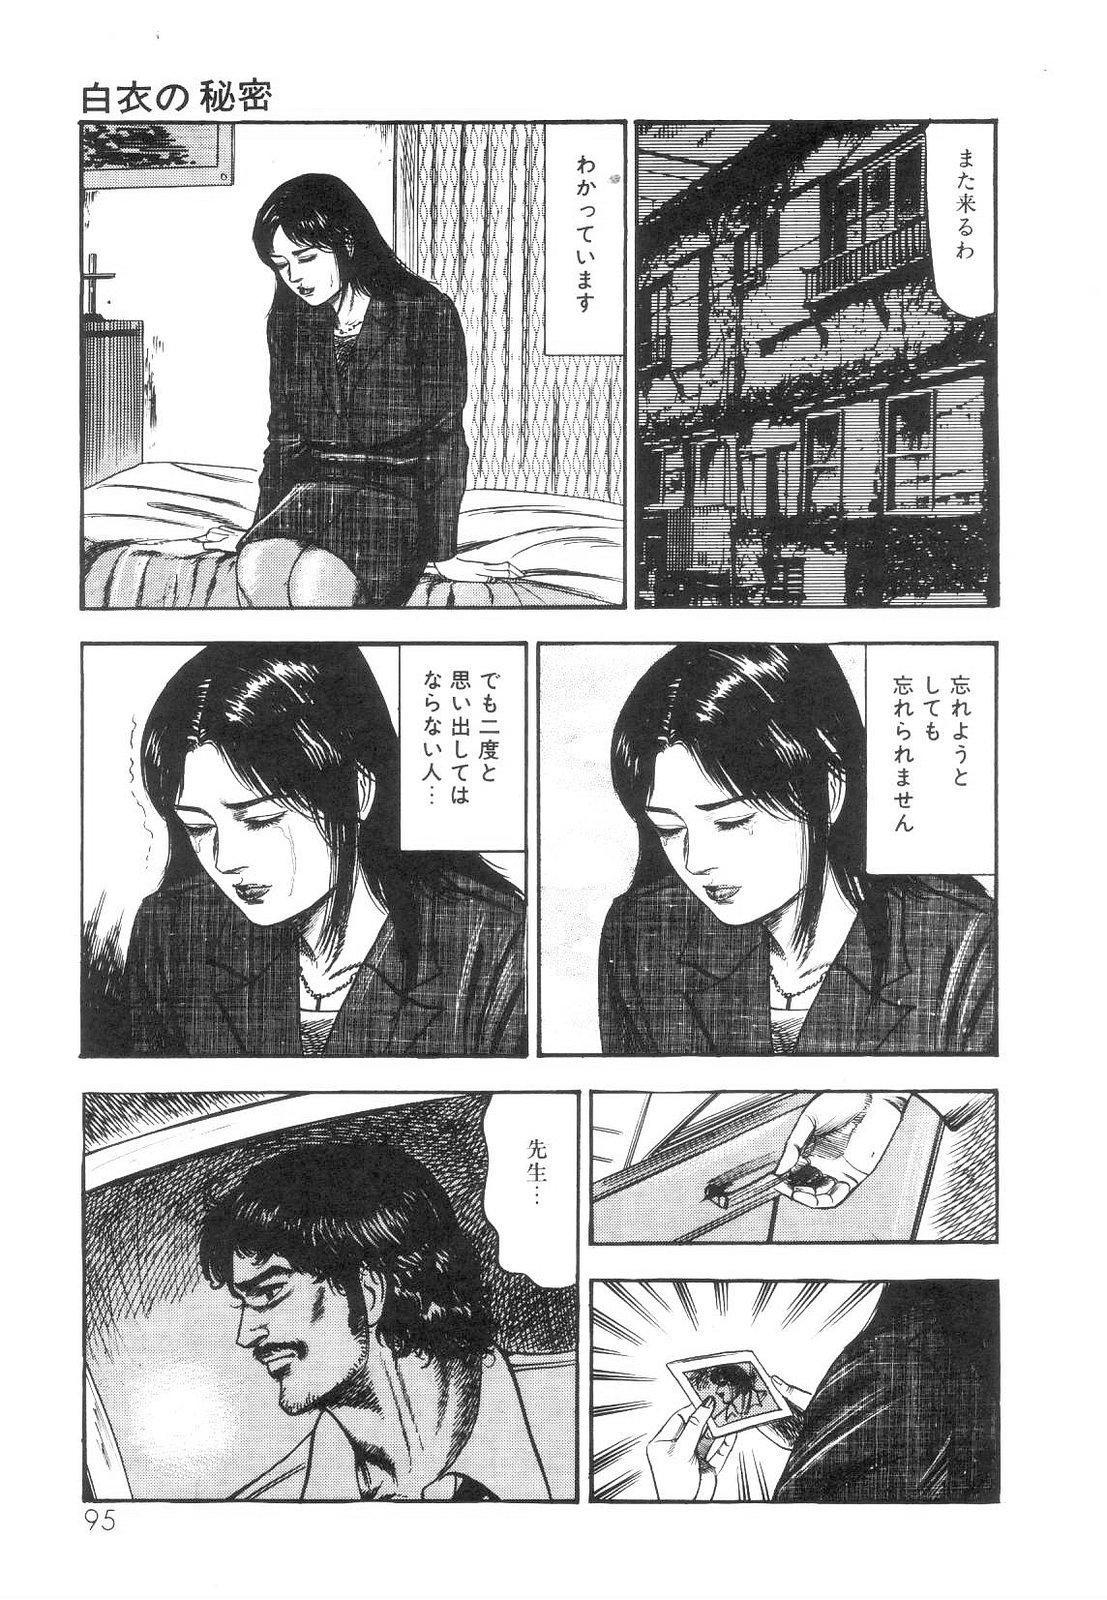 Shiro no Mokushiroku Vol. 1 - Sei Shojo Shion no Shou 96